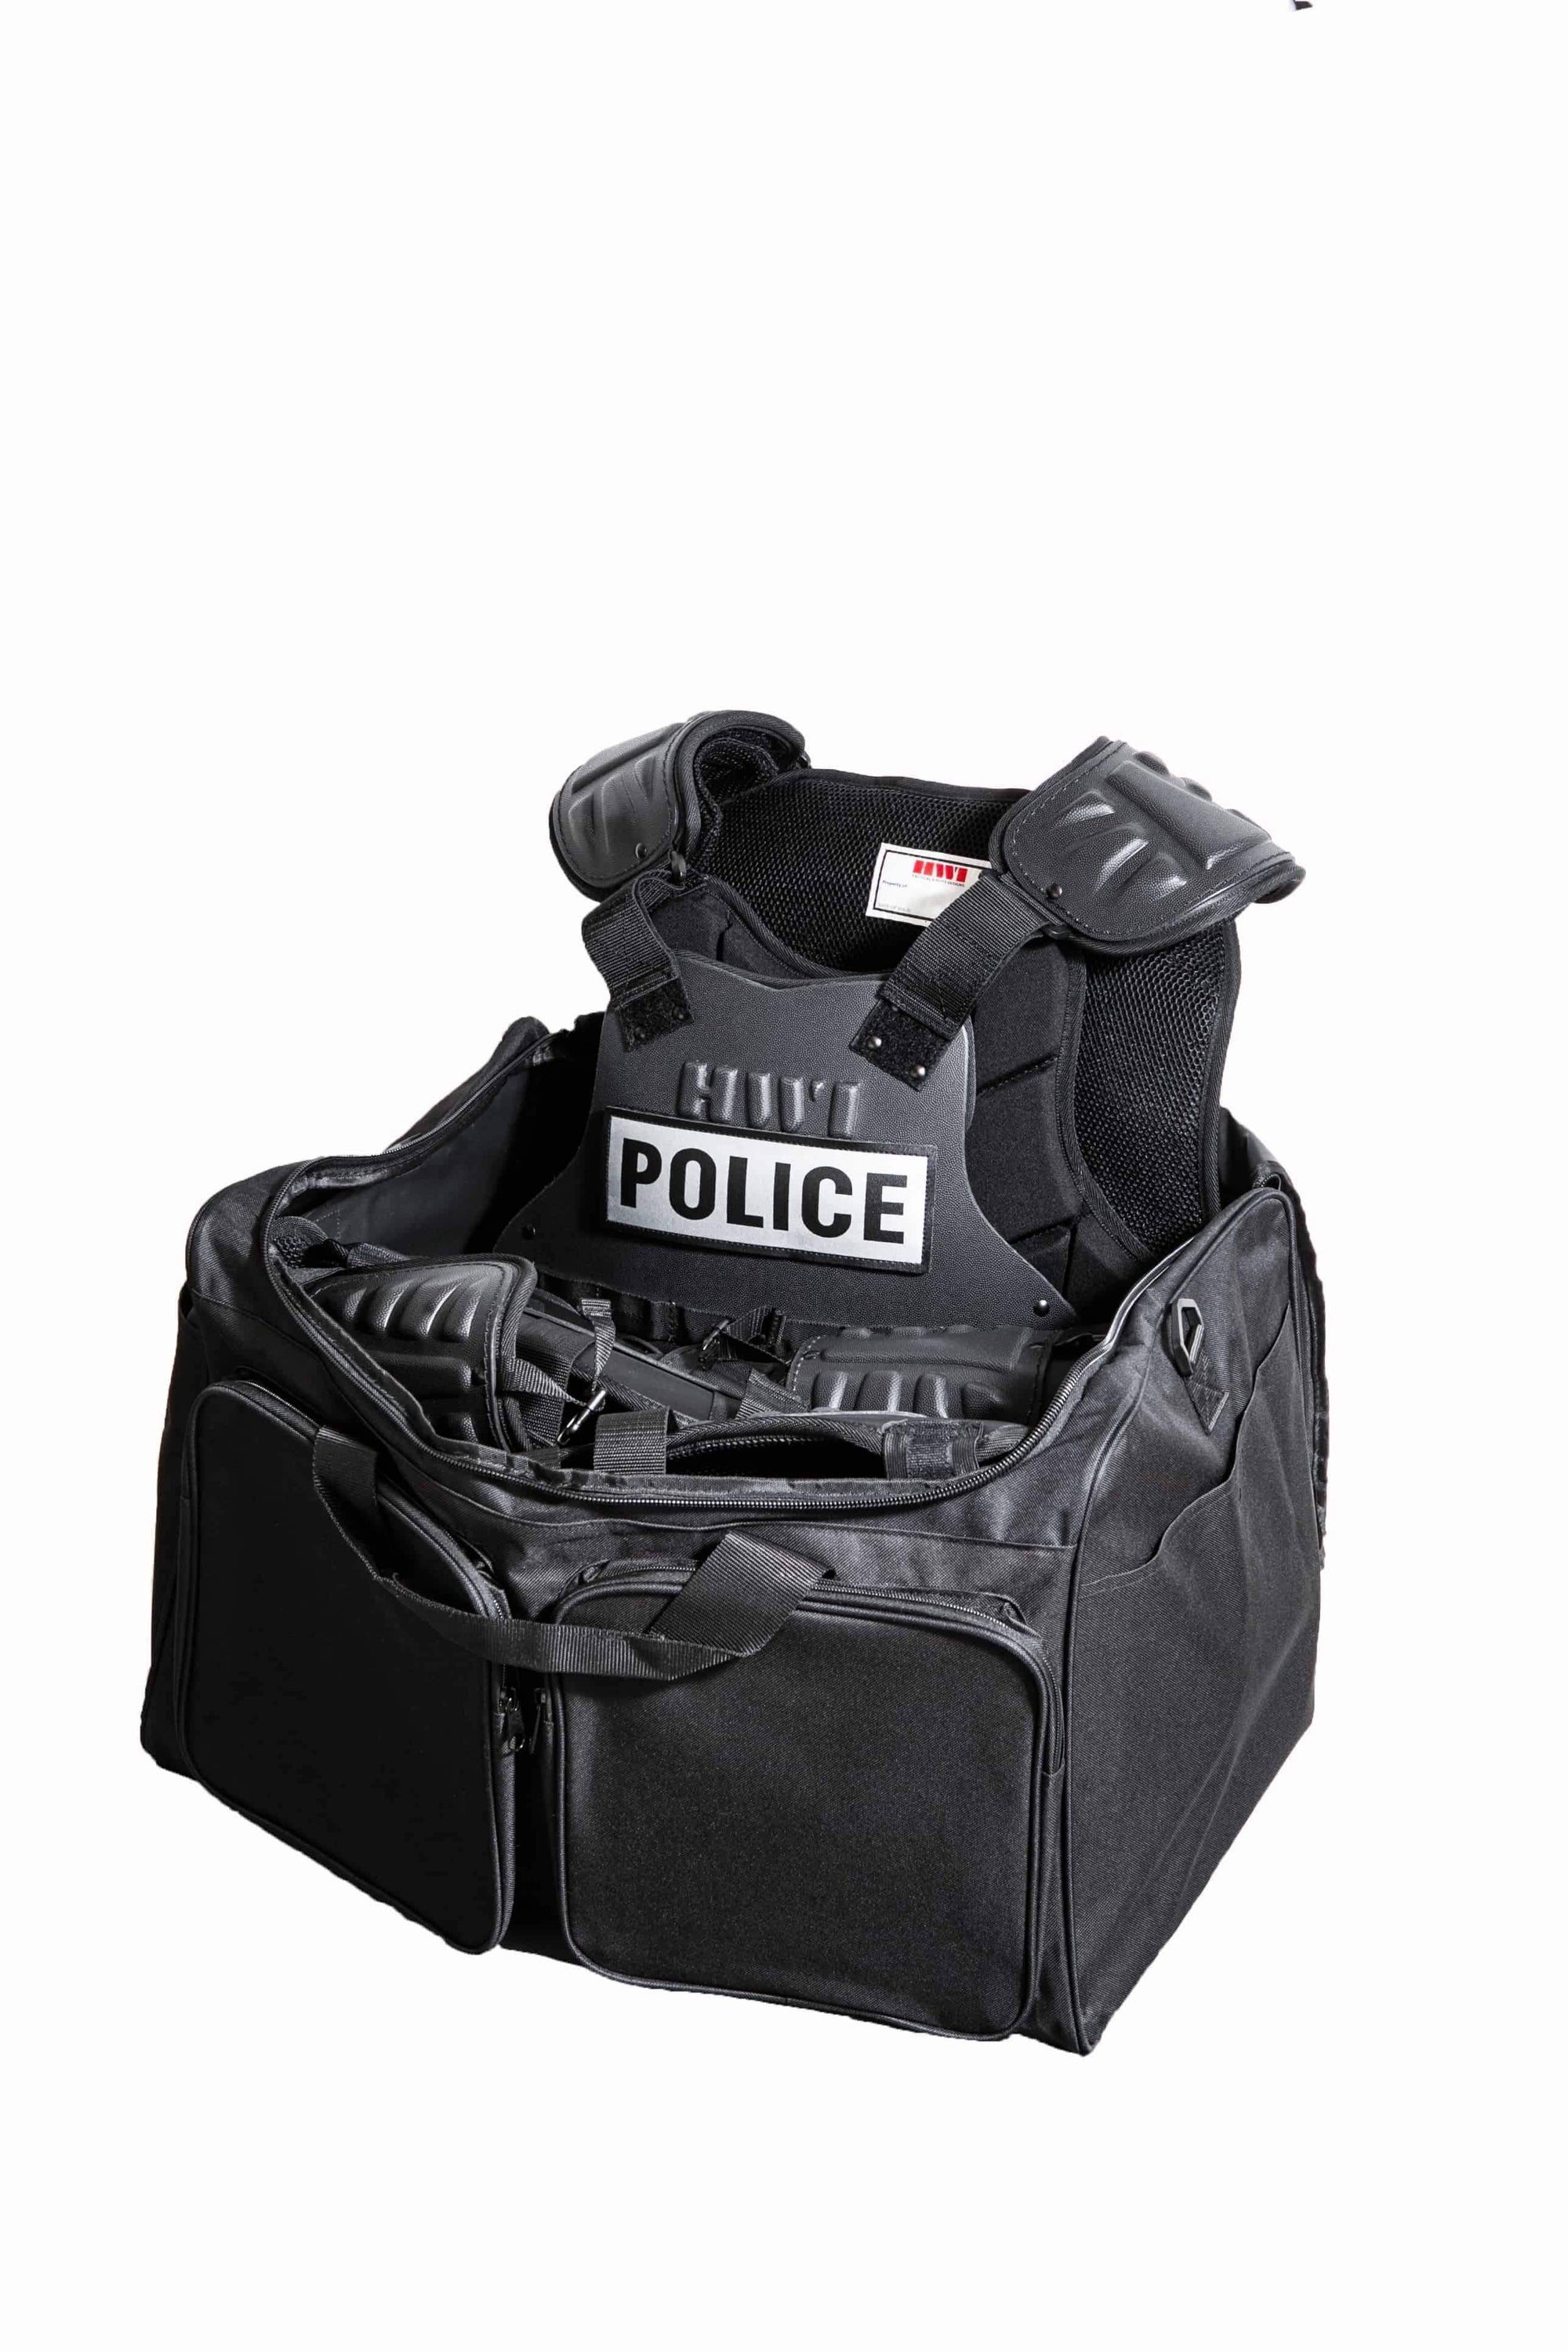 HWI Gear ED100 Elite Defender Riot Suit Protective Gear HWI Gear Tactical Gear Supplier Tactical Distributors Australia